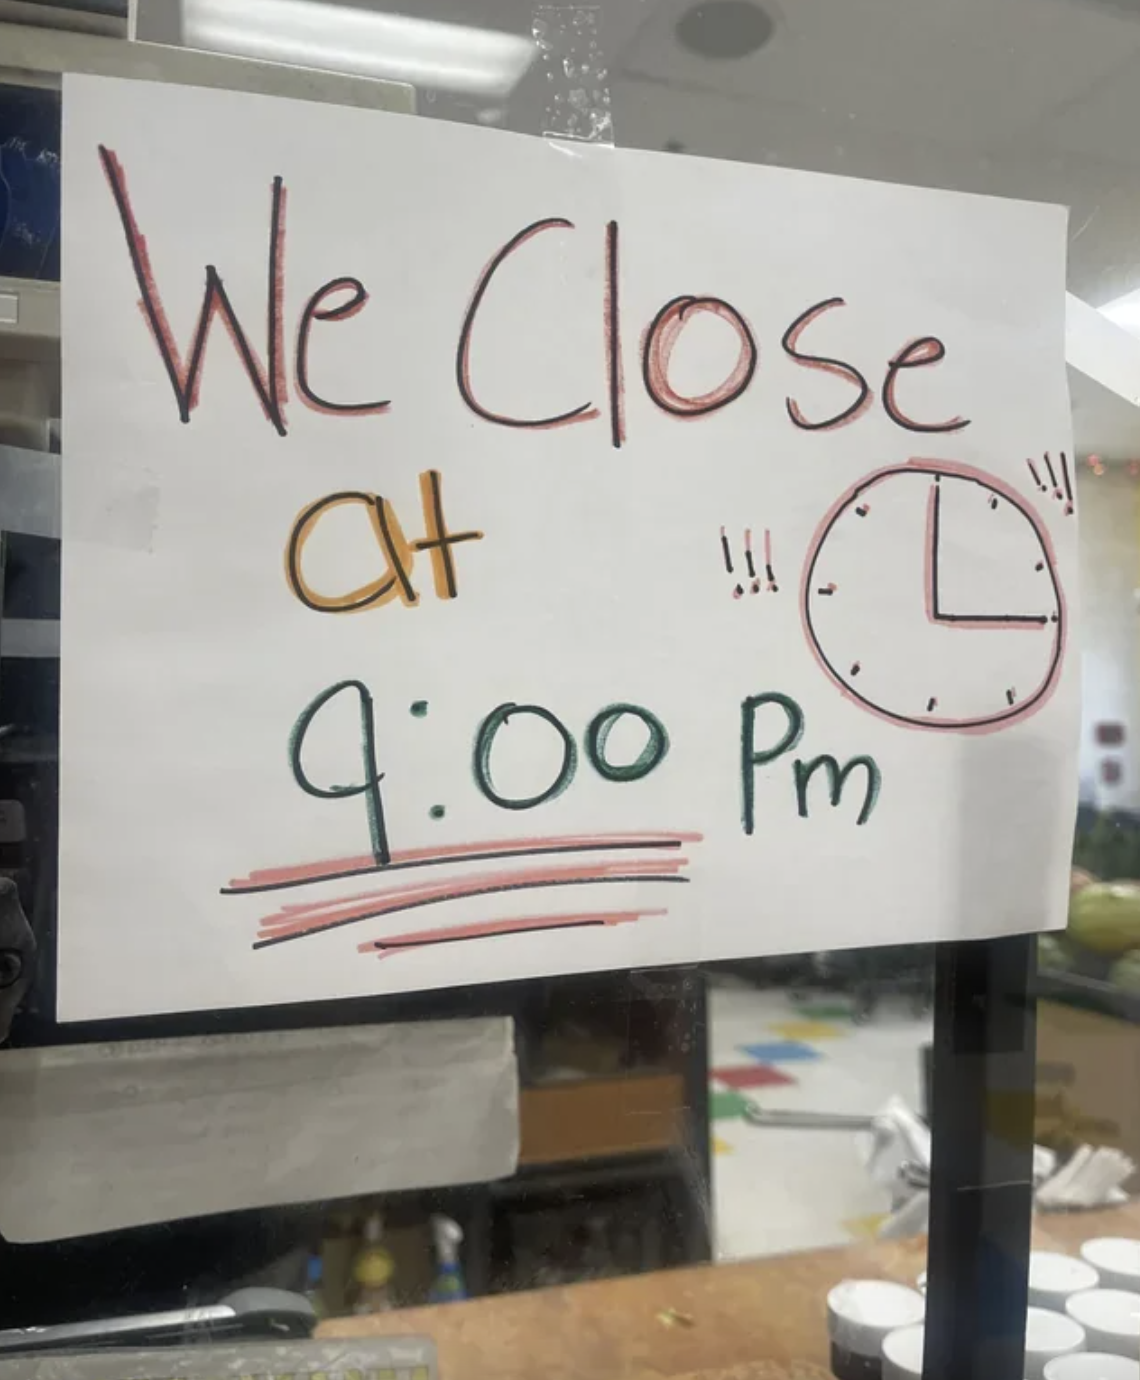 &quot;We close at 9:00 Pm&quot;